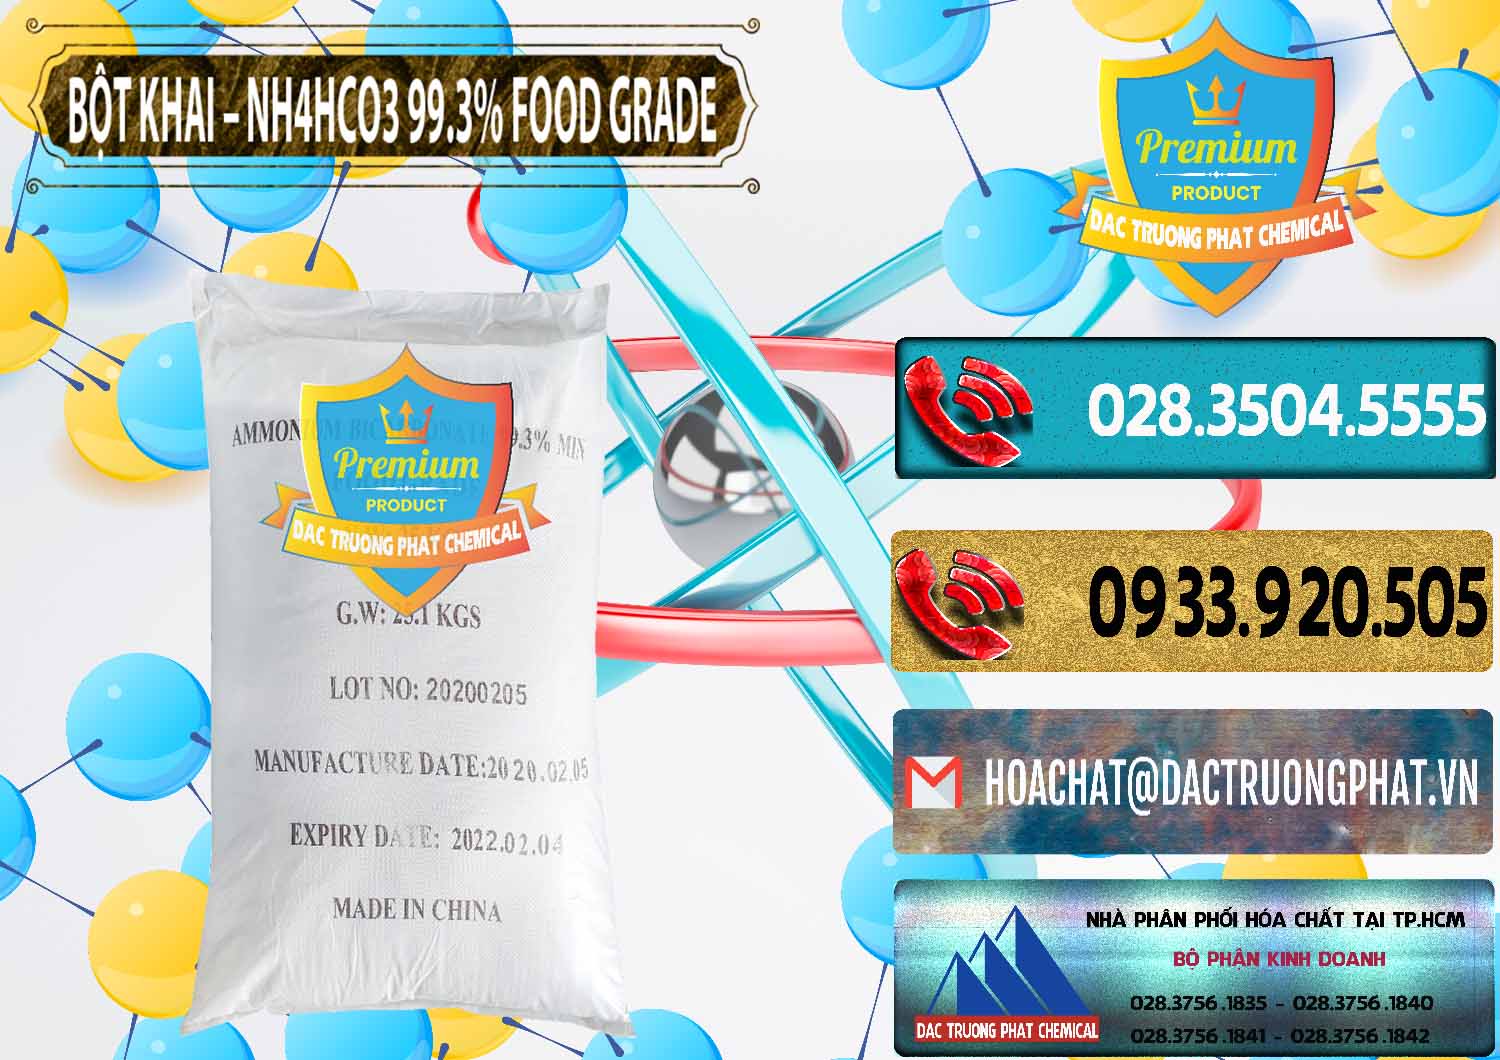 Công ty chuyên kinh doanh & bán Ammonium Bicarbonate – Bột Khai NH4HCO3 Food Grade Trung Quốc China - 0019 - Cty chuyên phân phối & bán hóa chất tại TP.HCM - hoachatdetnhuom.com